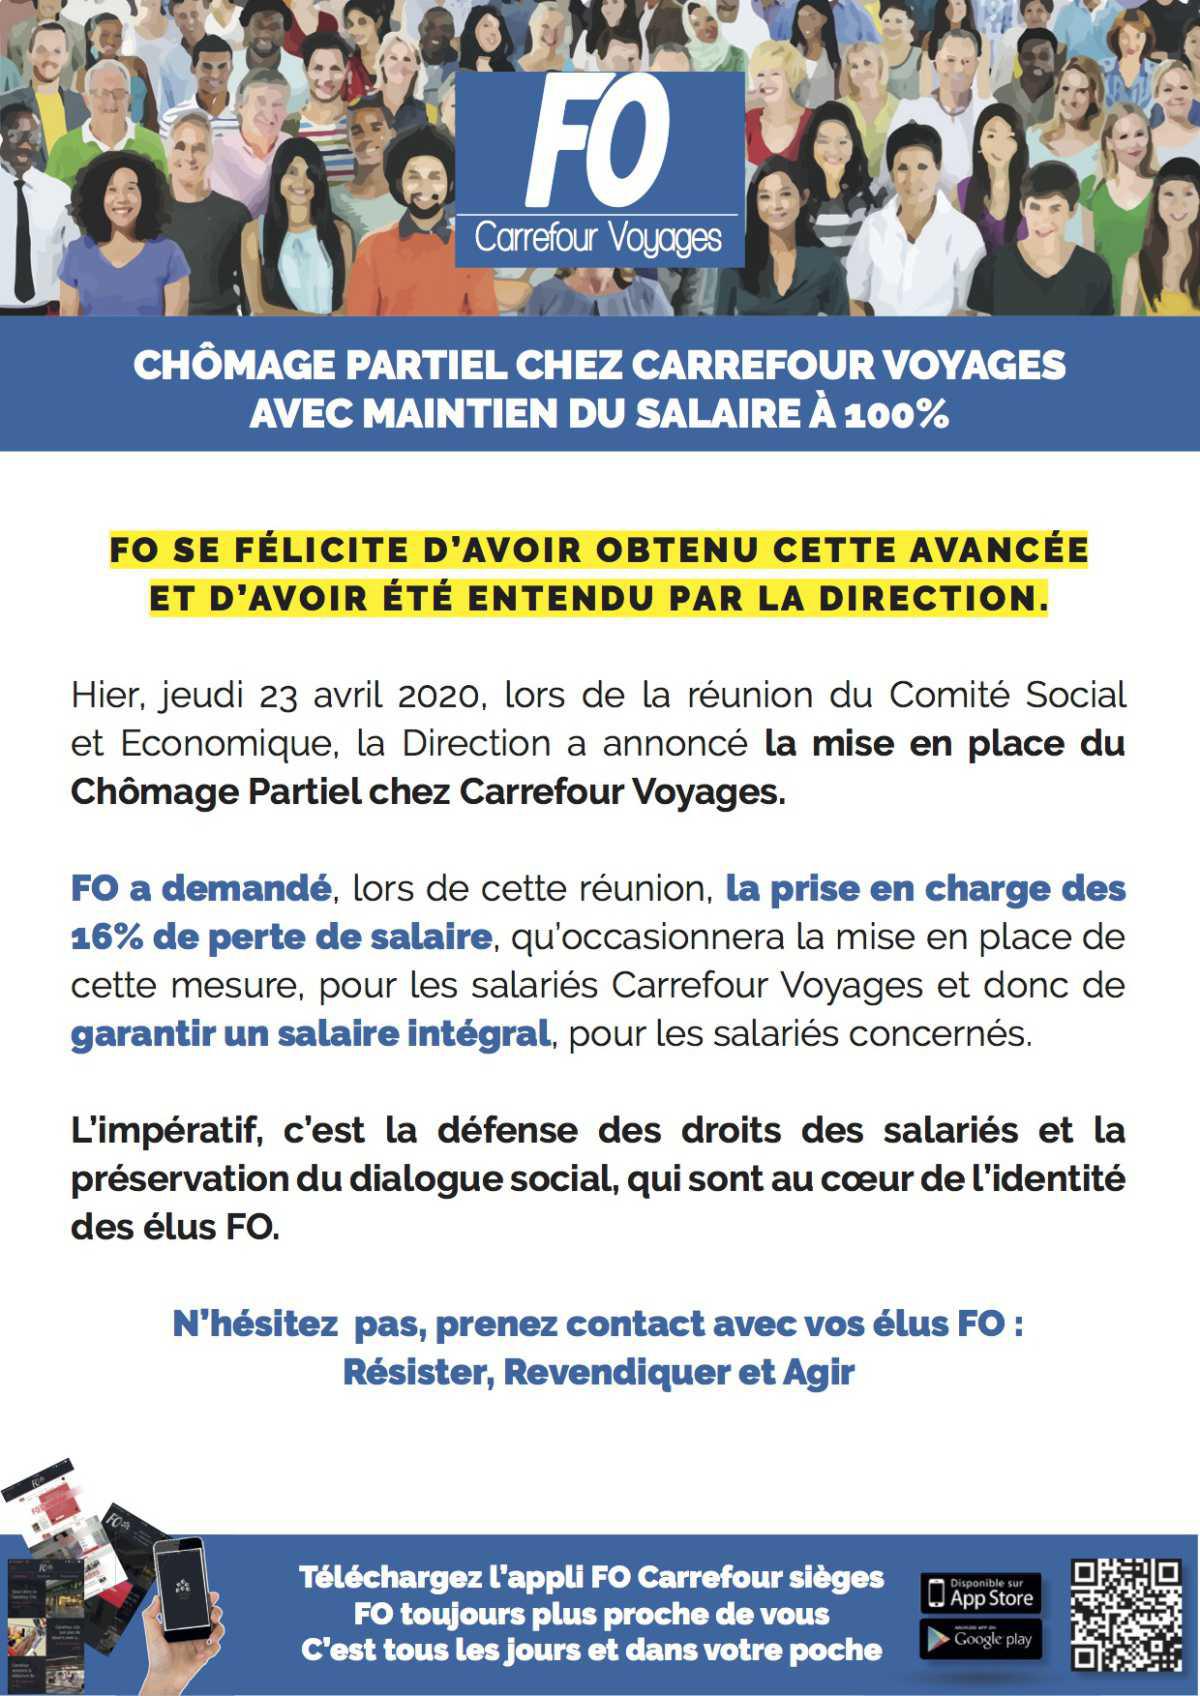 FO obtient le maintien du salaire à 100% chez Carrefour Voyages